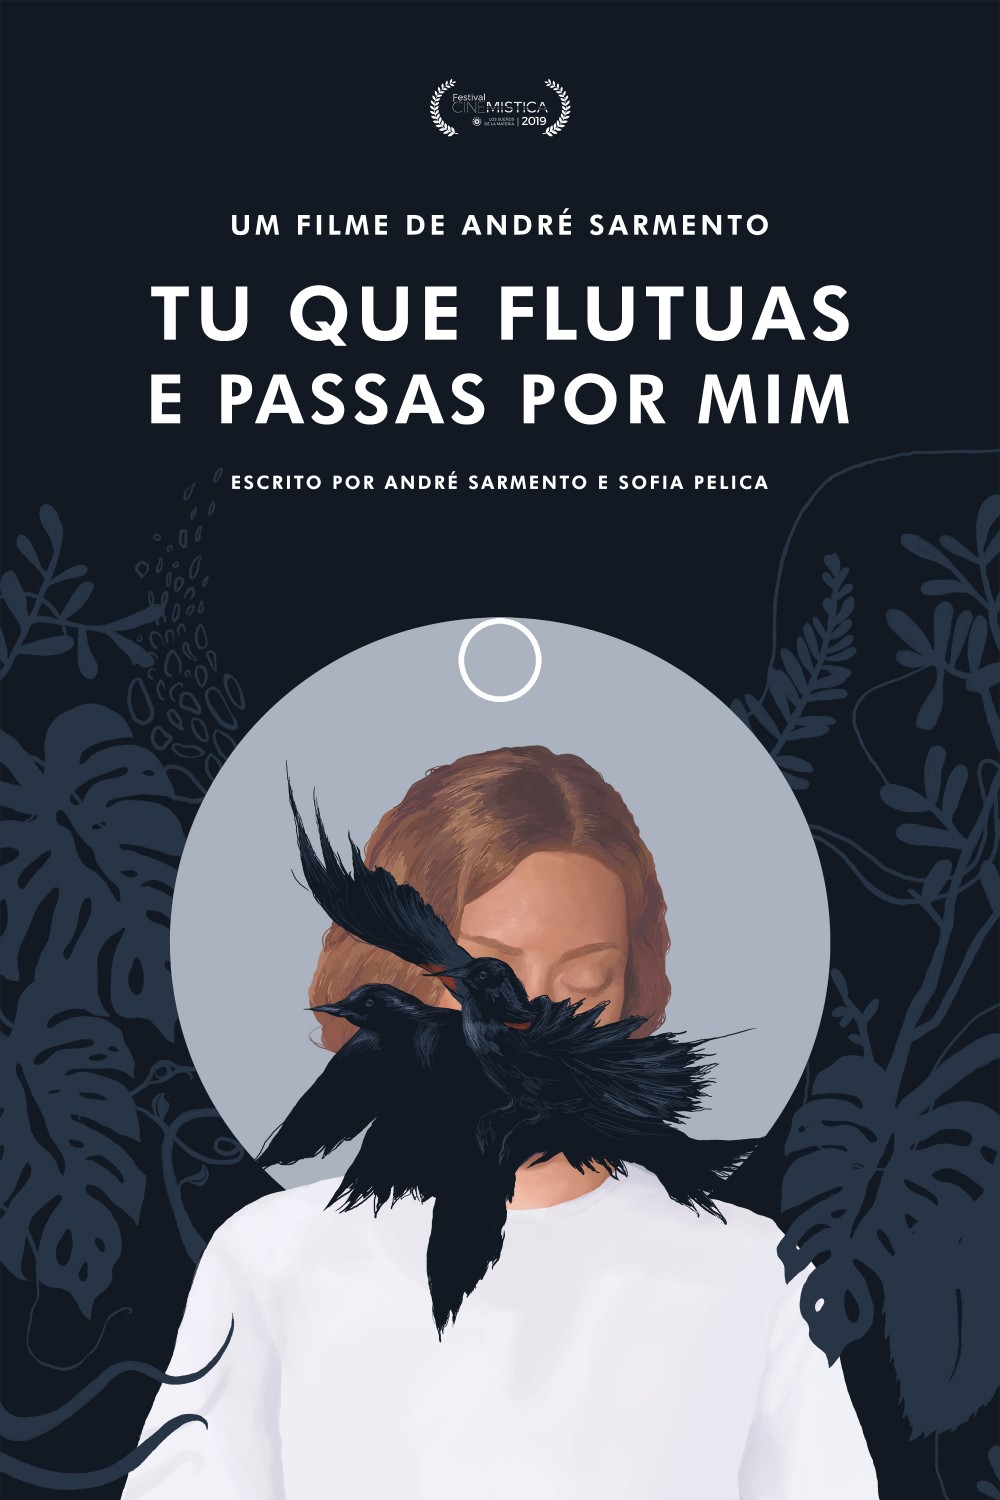 Extra Large Movie Poster Image for Tu Que Flutuas e Passas Por Mim